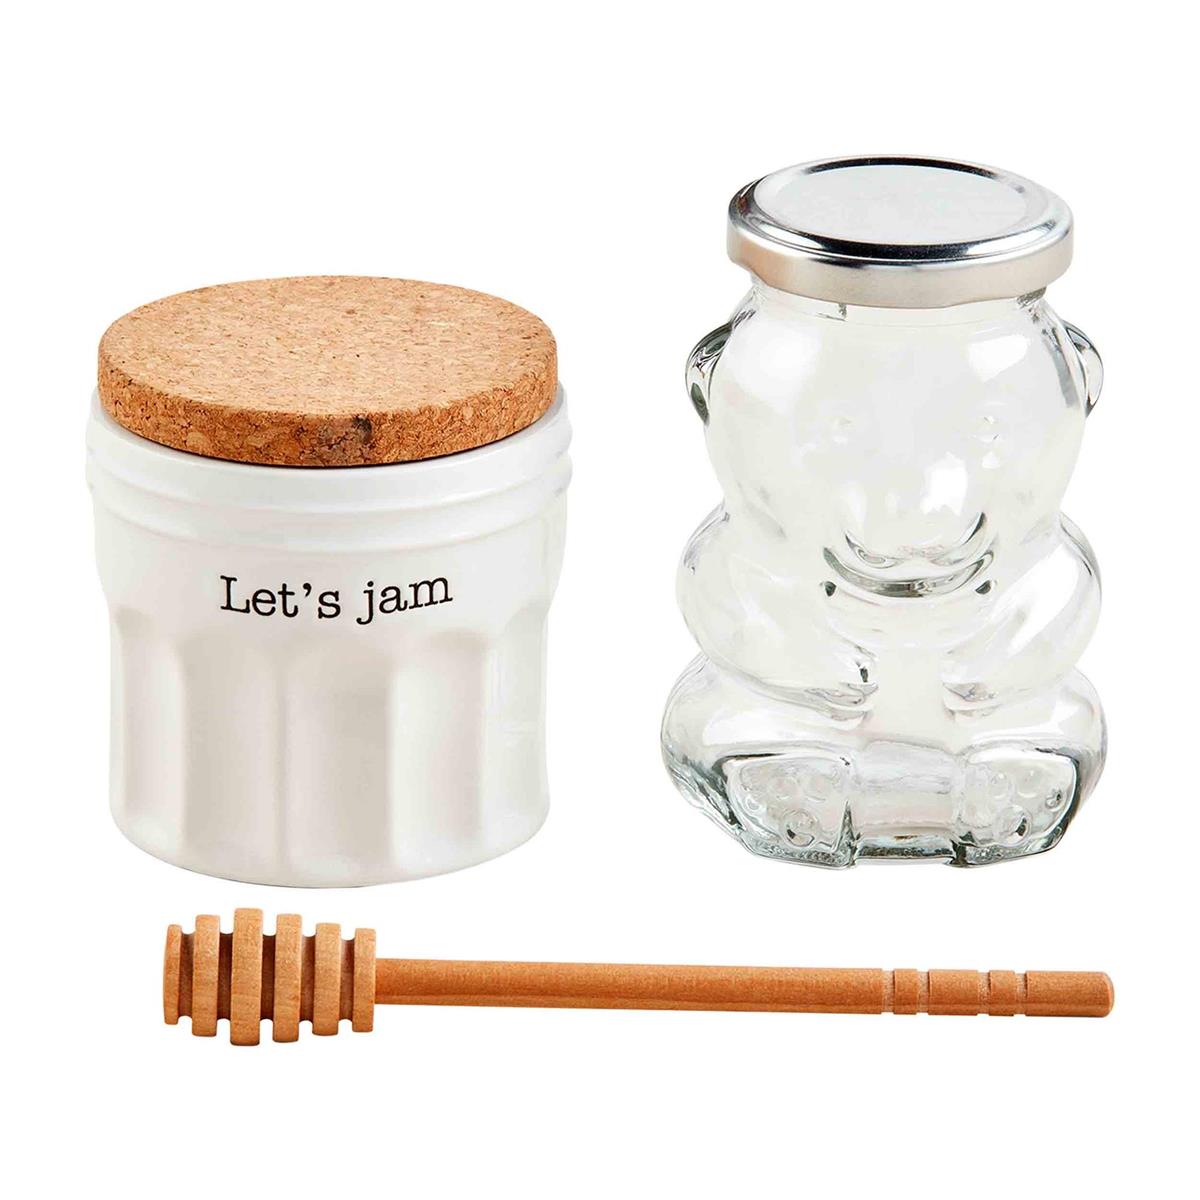 Jam and Honey Set